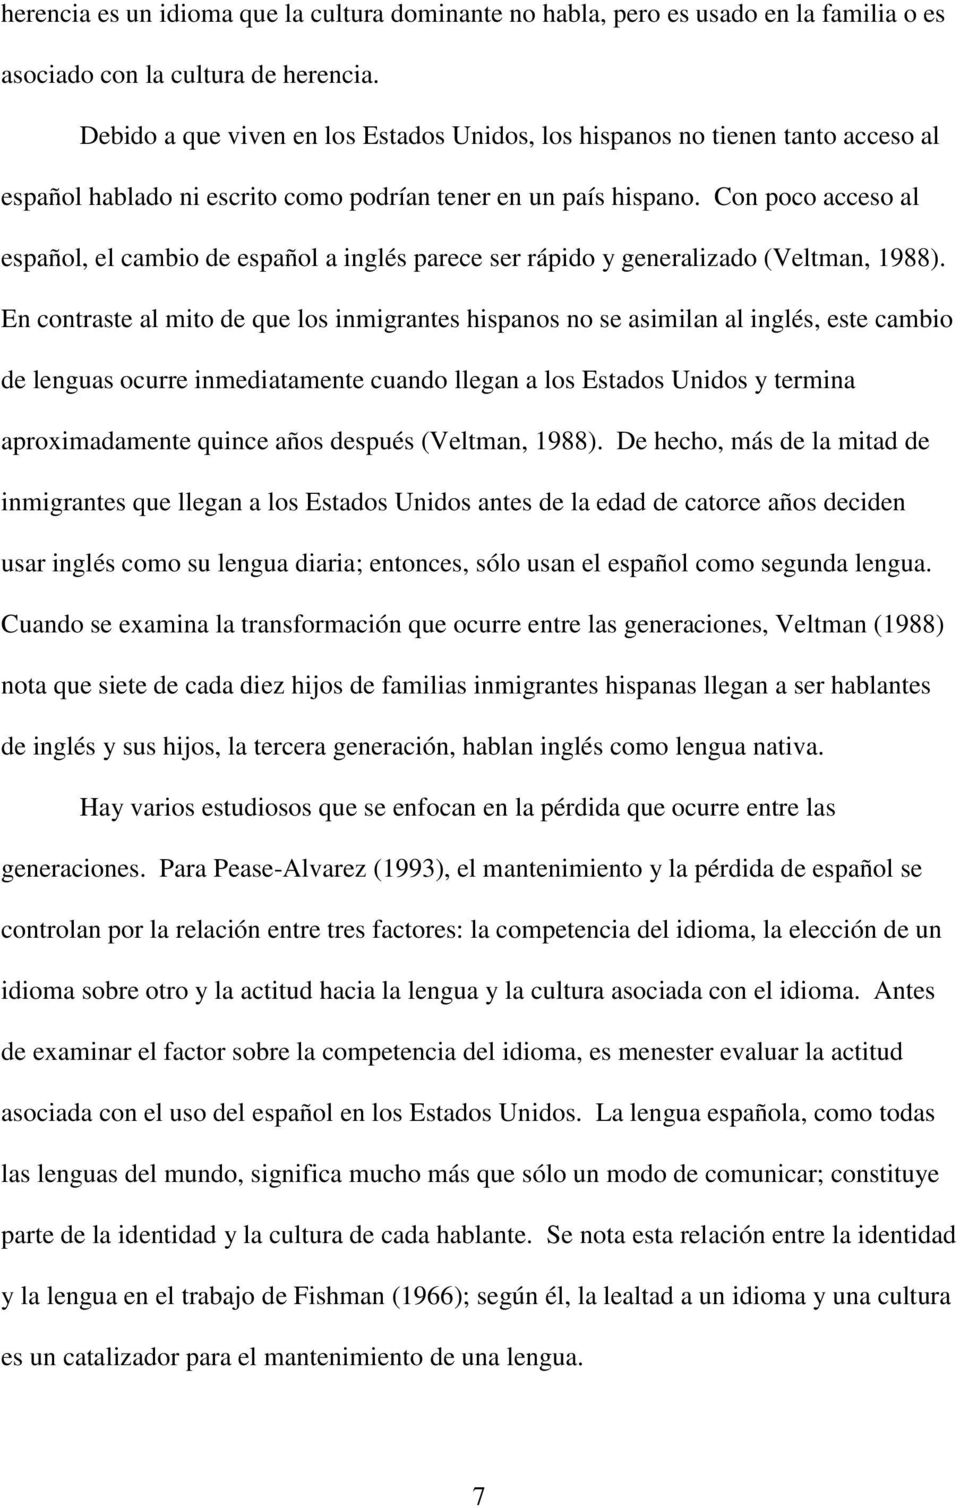 Con poco acceso al español, el cambio de español a inglés parece ser rápido y generalizado (Veltman, 1988).